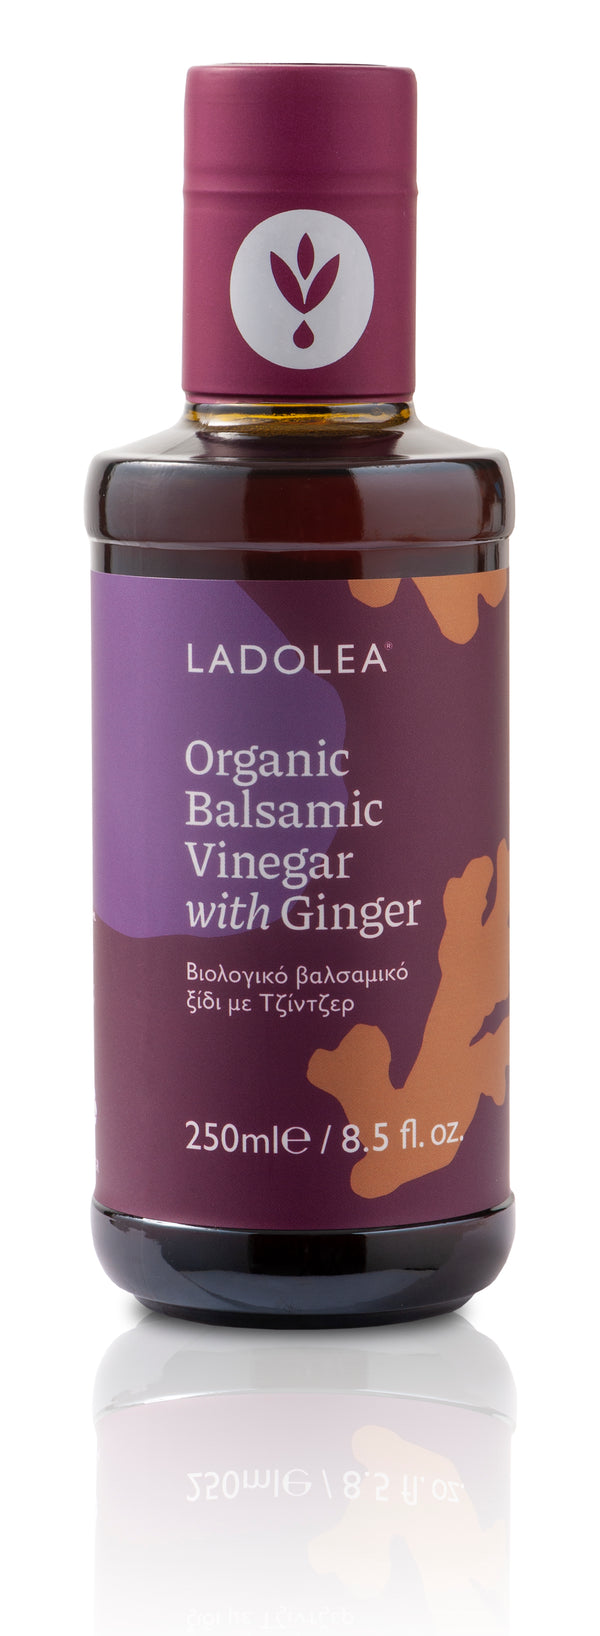 Organic Balsamic Vinegar with Ginger 250ml